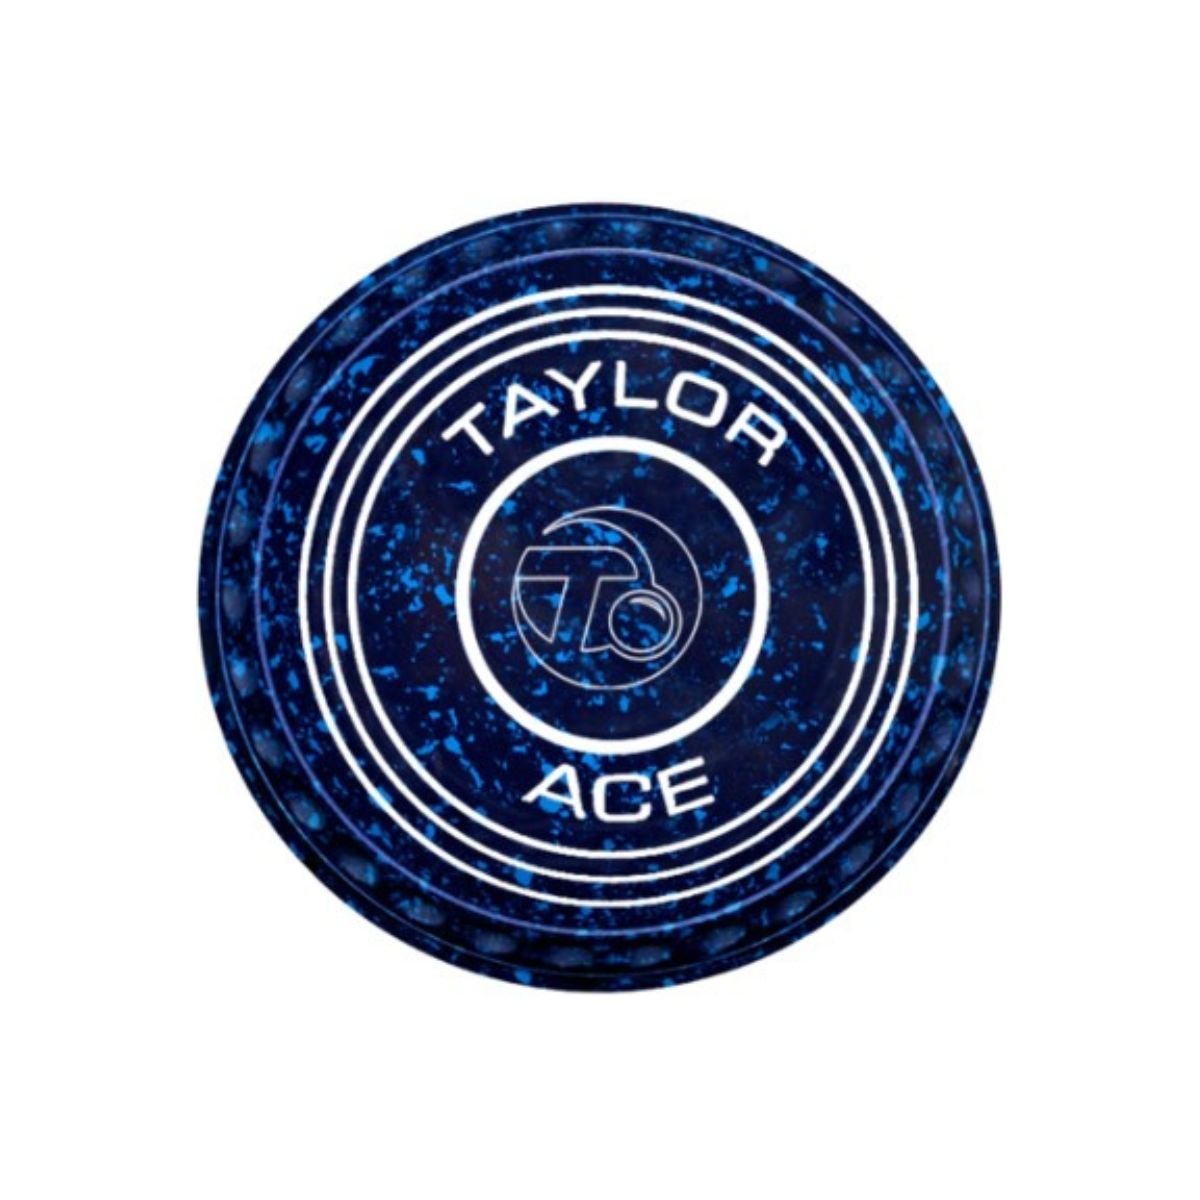 Taylor Ace Pro-Grip Coloured Bowls - 6